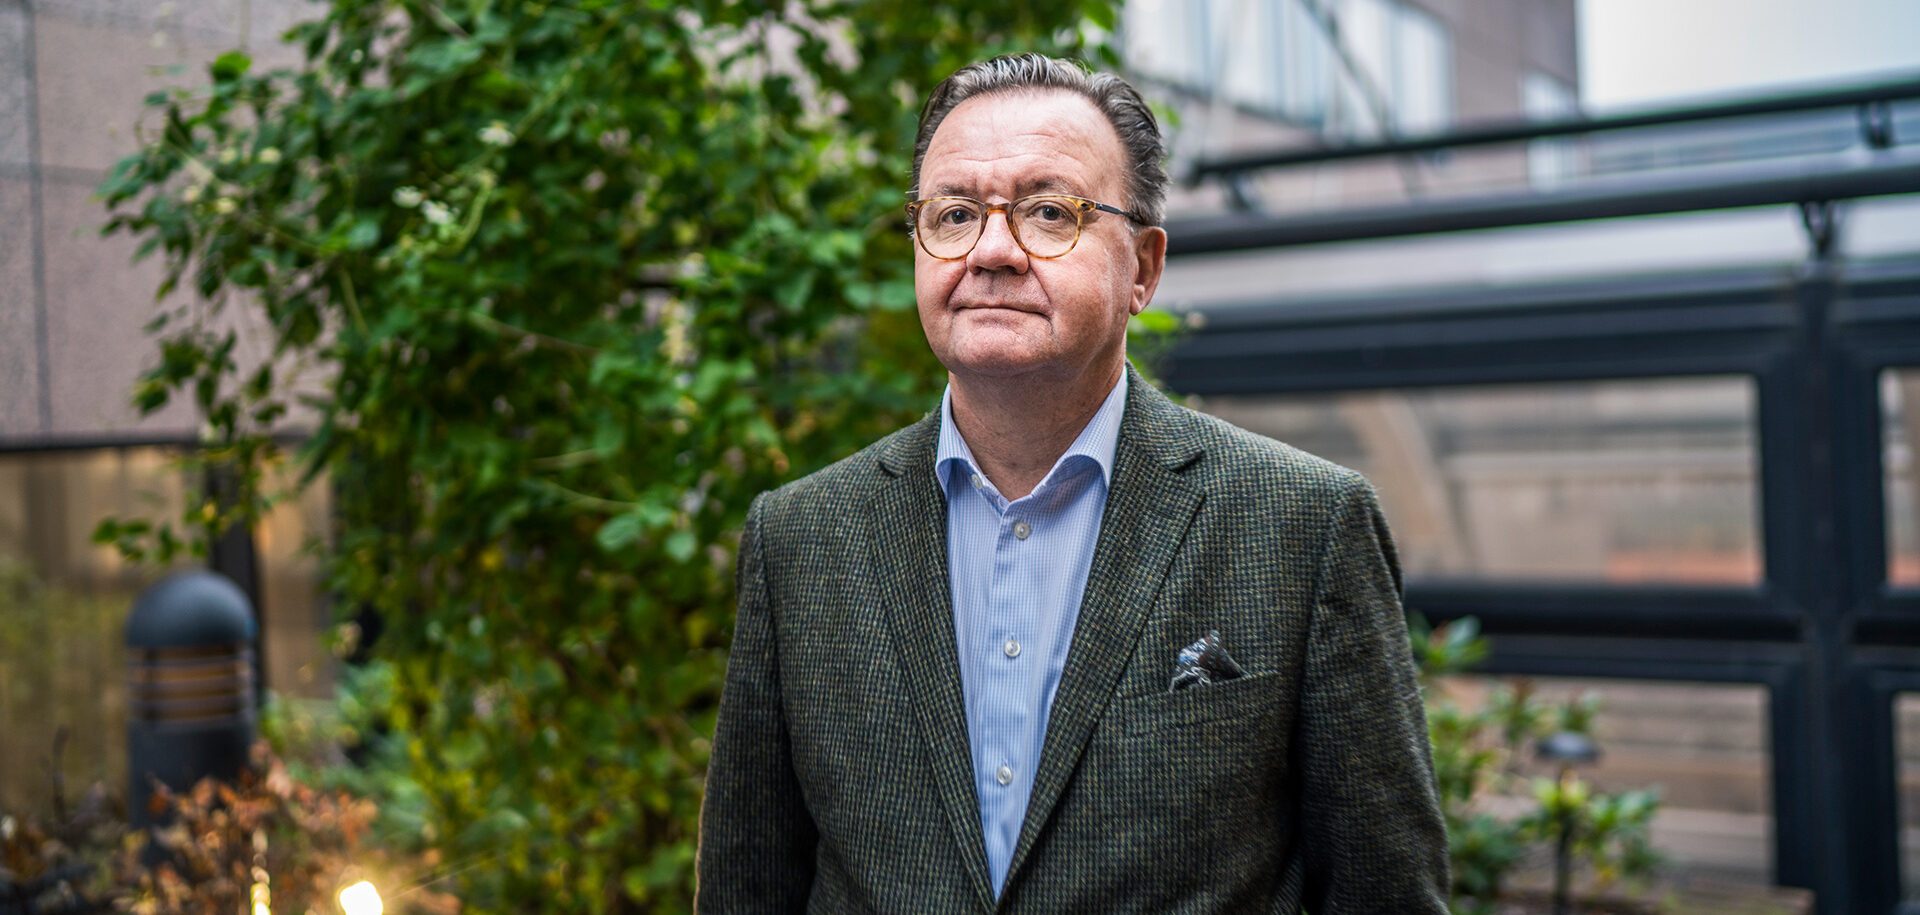 Karl-Henrik Sundström, výkonný ředitel švédsko-finské skupiny Stora Enso podnikající v oblasti lesnictví, celulózy a papíru